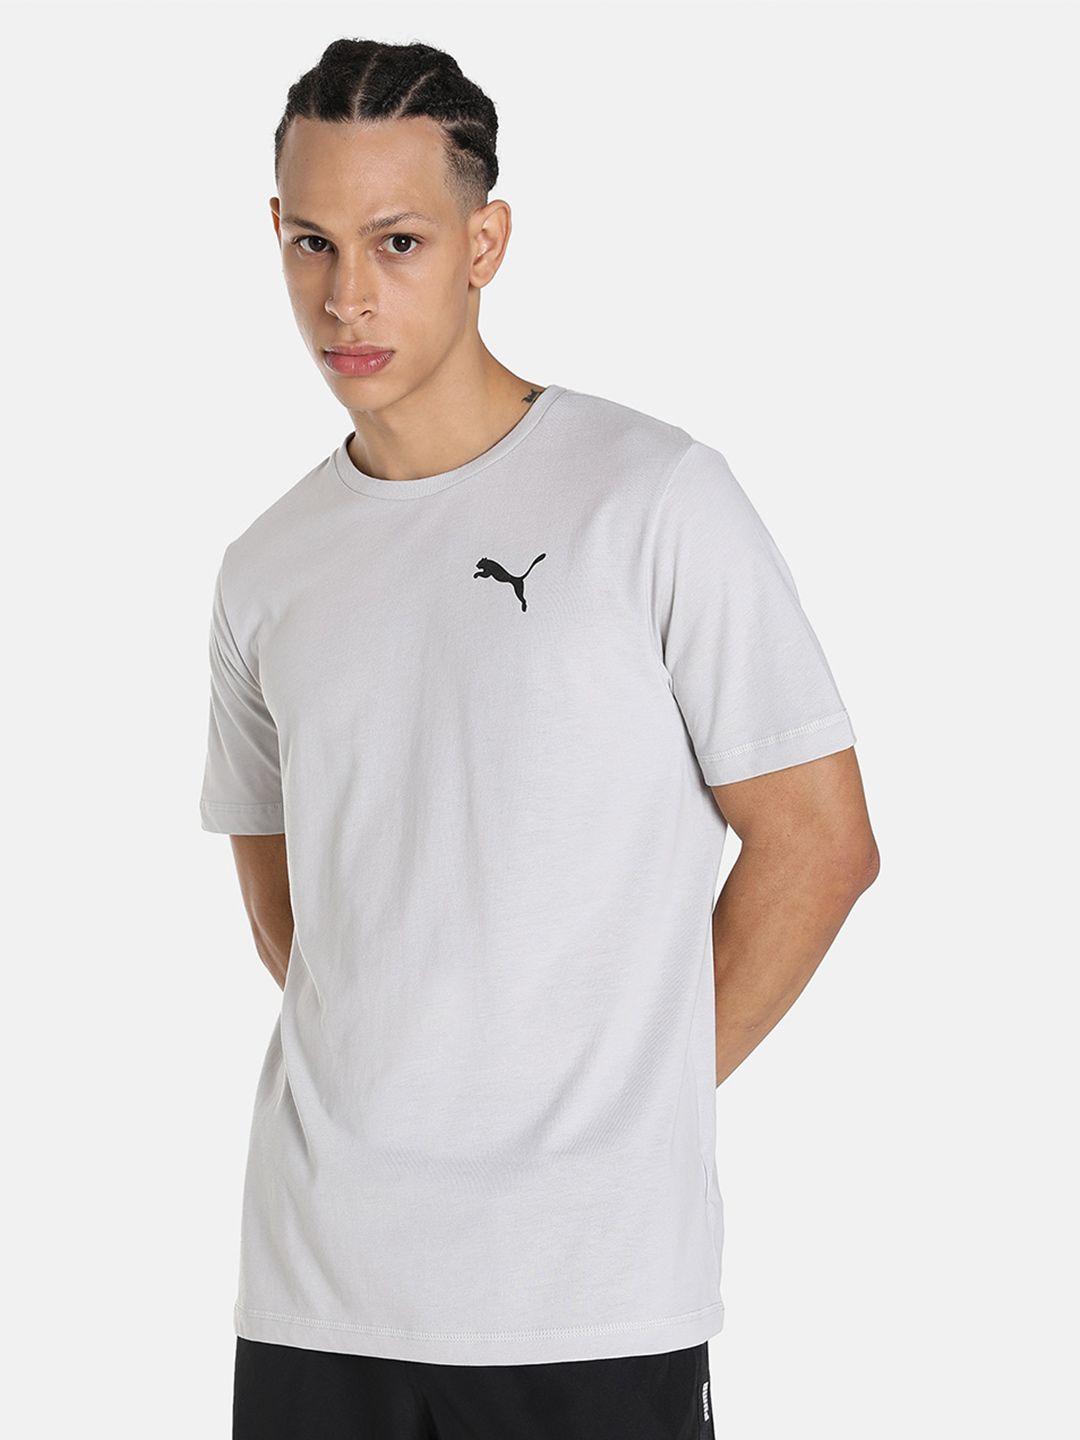 puma-men-active-soft-cotton-sports-t-shirt